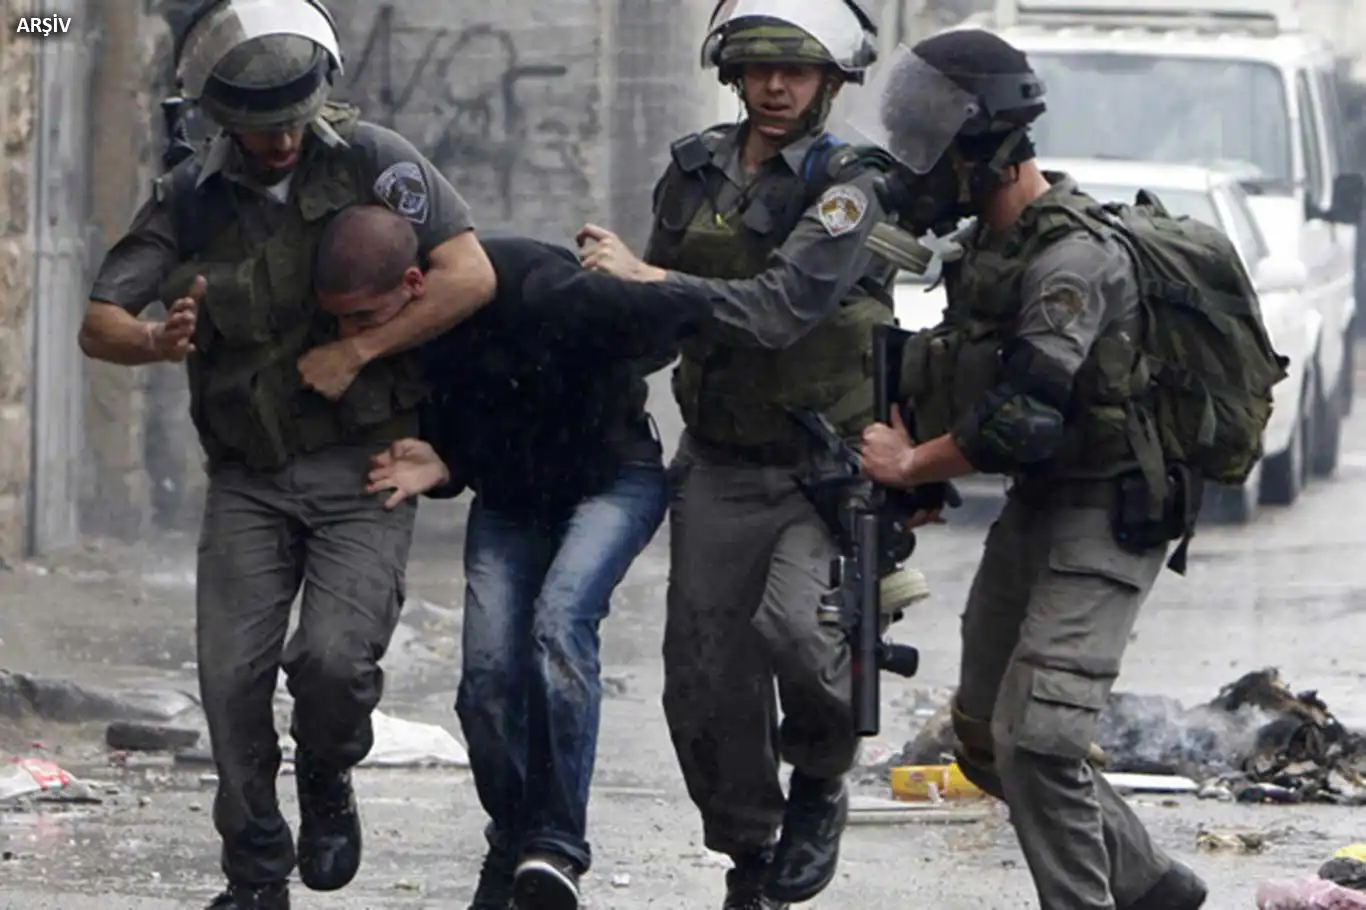 Siyonist işgal rejimi, Filistinlileri hukuksuzca alıkoymaya devam ediyor